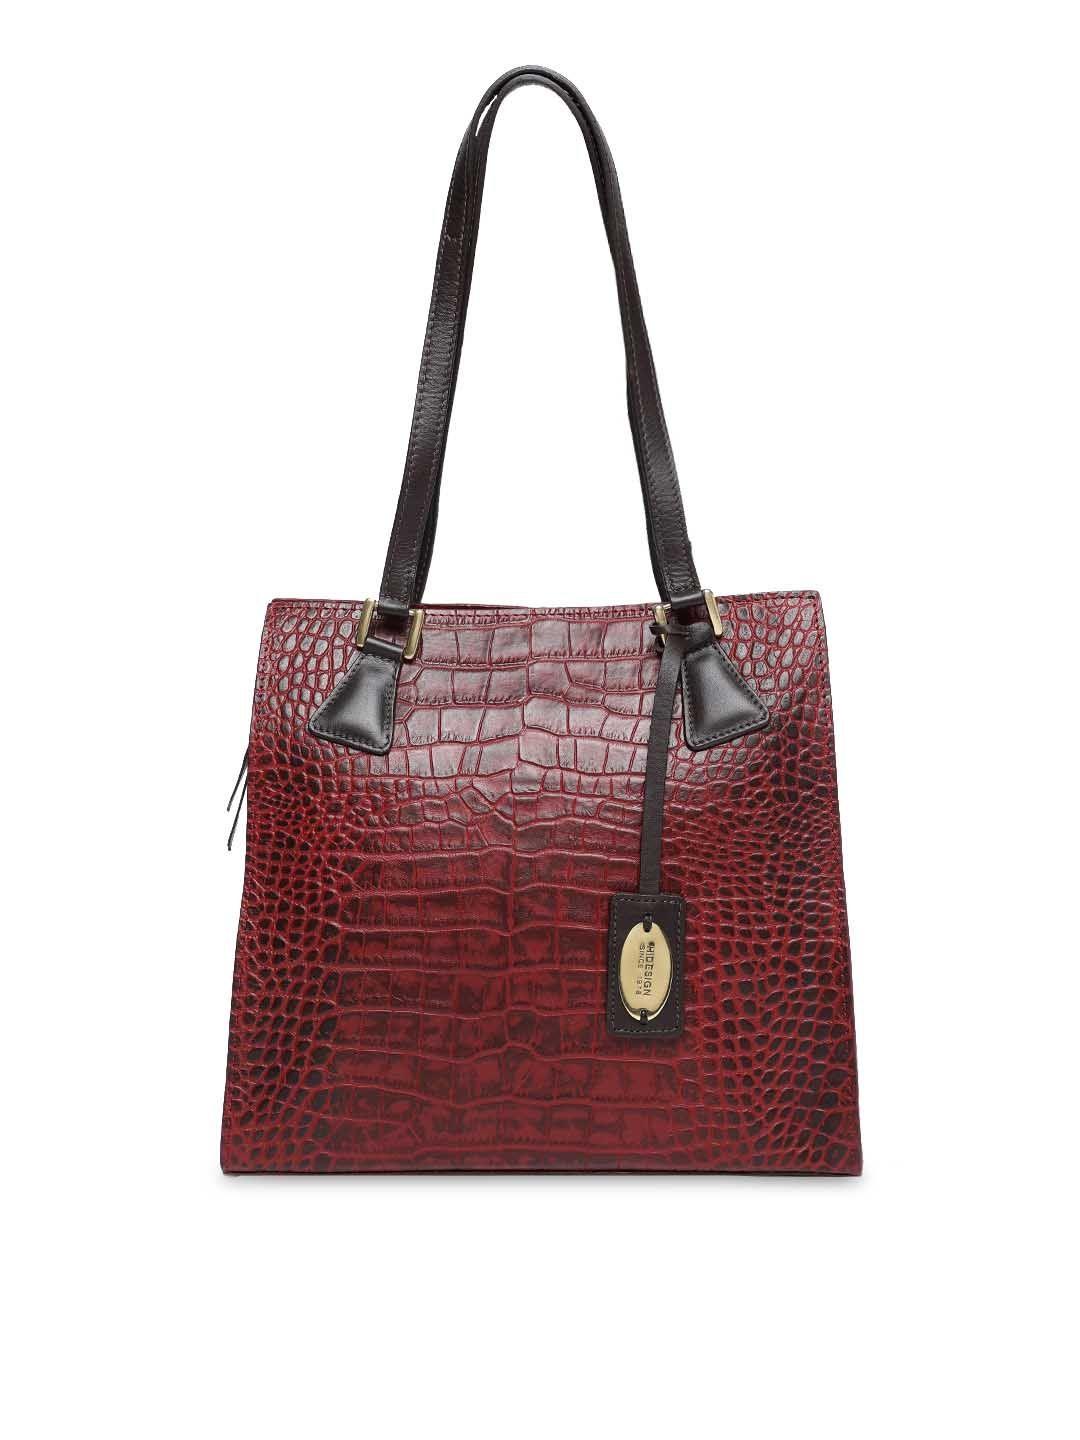 hidesign-red-textured-leather-shoulder-bag